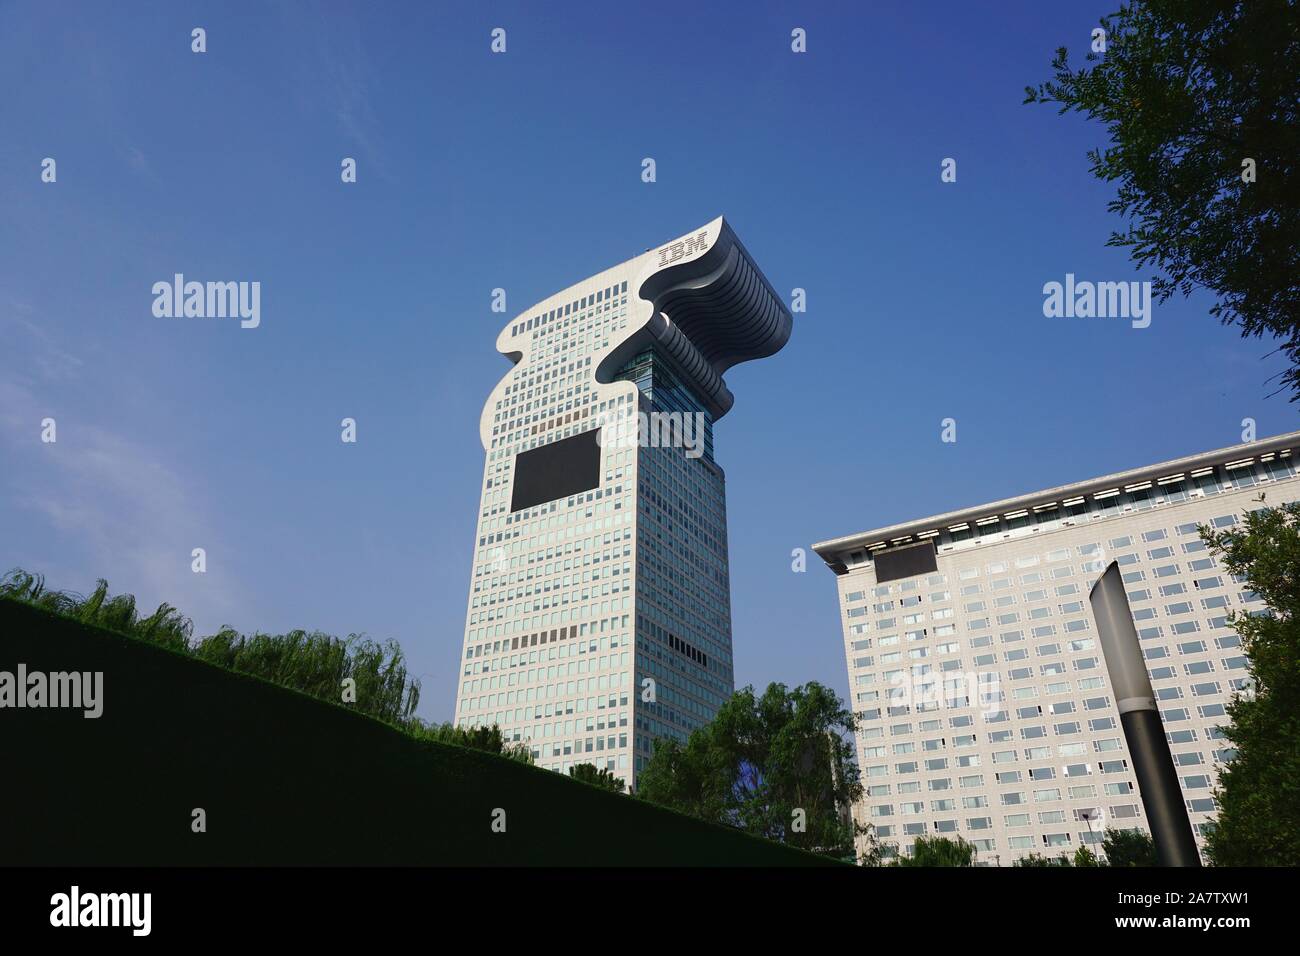 Vue sur le Pangu Plaza, un monument près du Parc olympique de Beijing, qui sera mis aux enchères à Beijing, Chine, 19 août 2019. Une fois les propriétés appartenant à fugit Banque D'Images